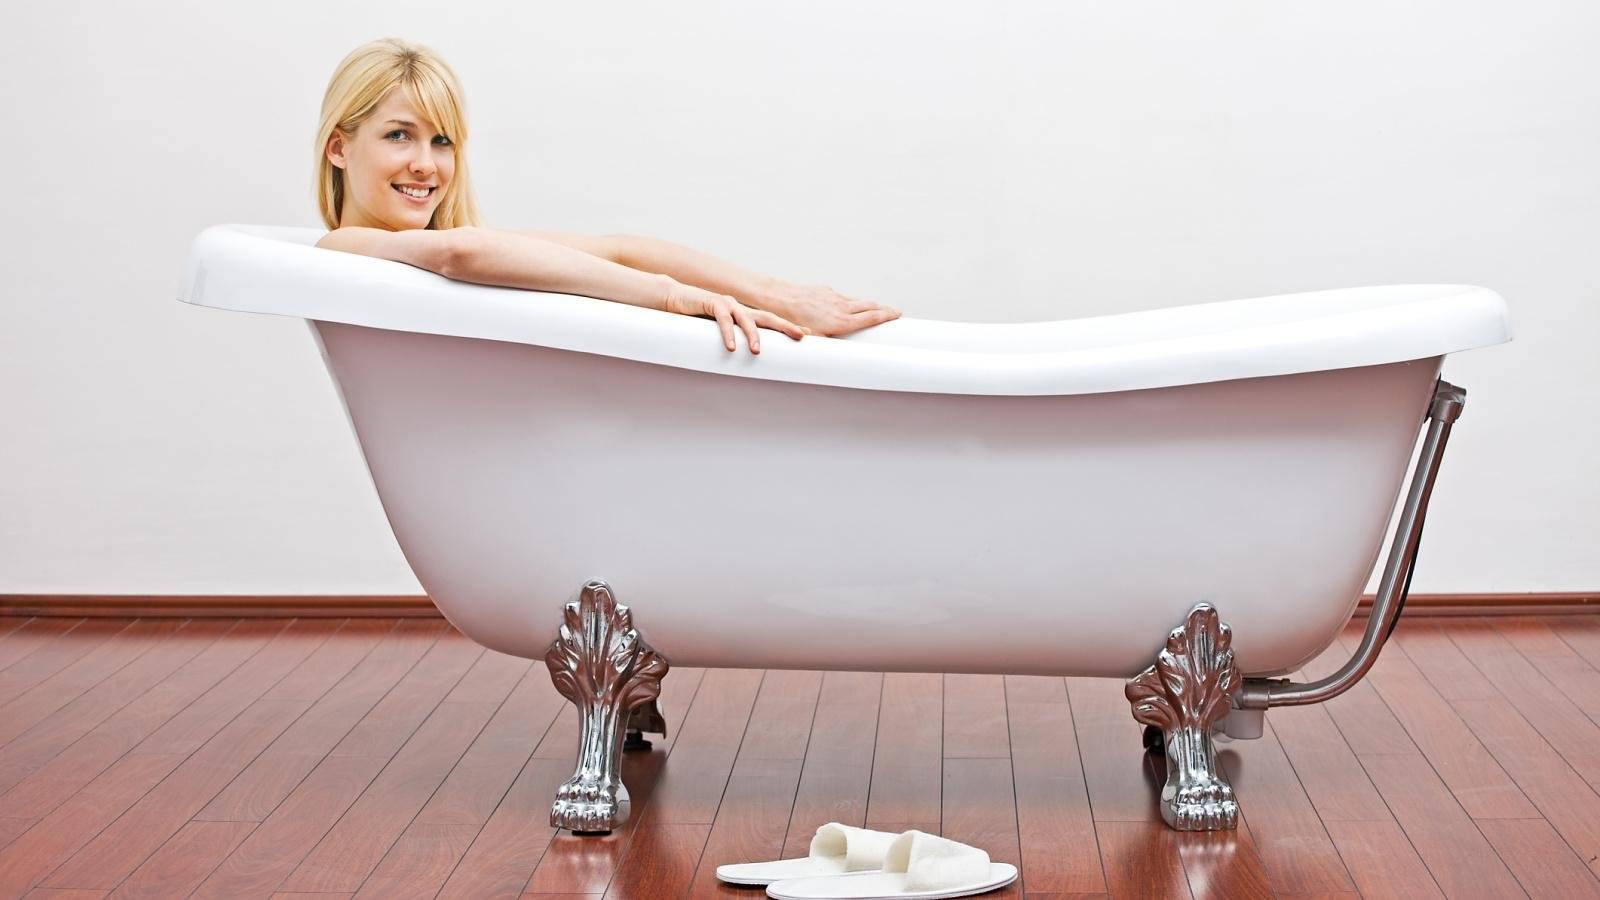 Какая ванна лучше, чугунная, металлическая или акриловая?